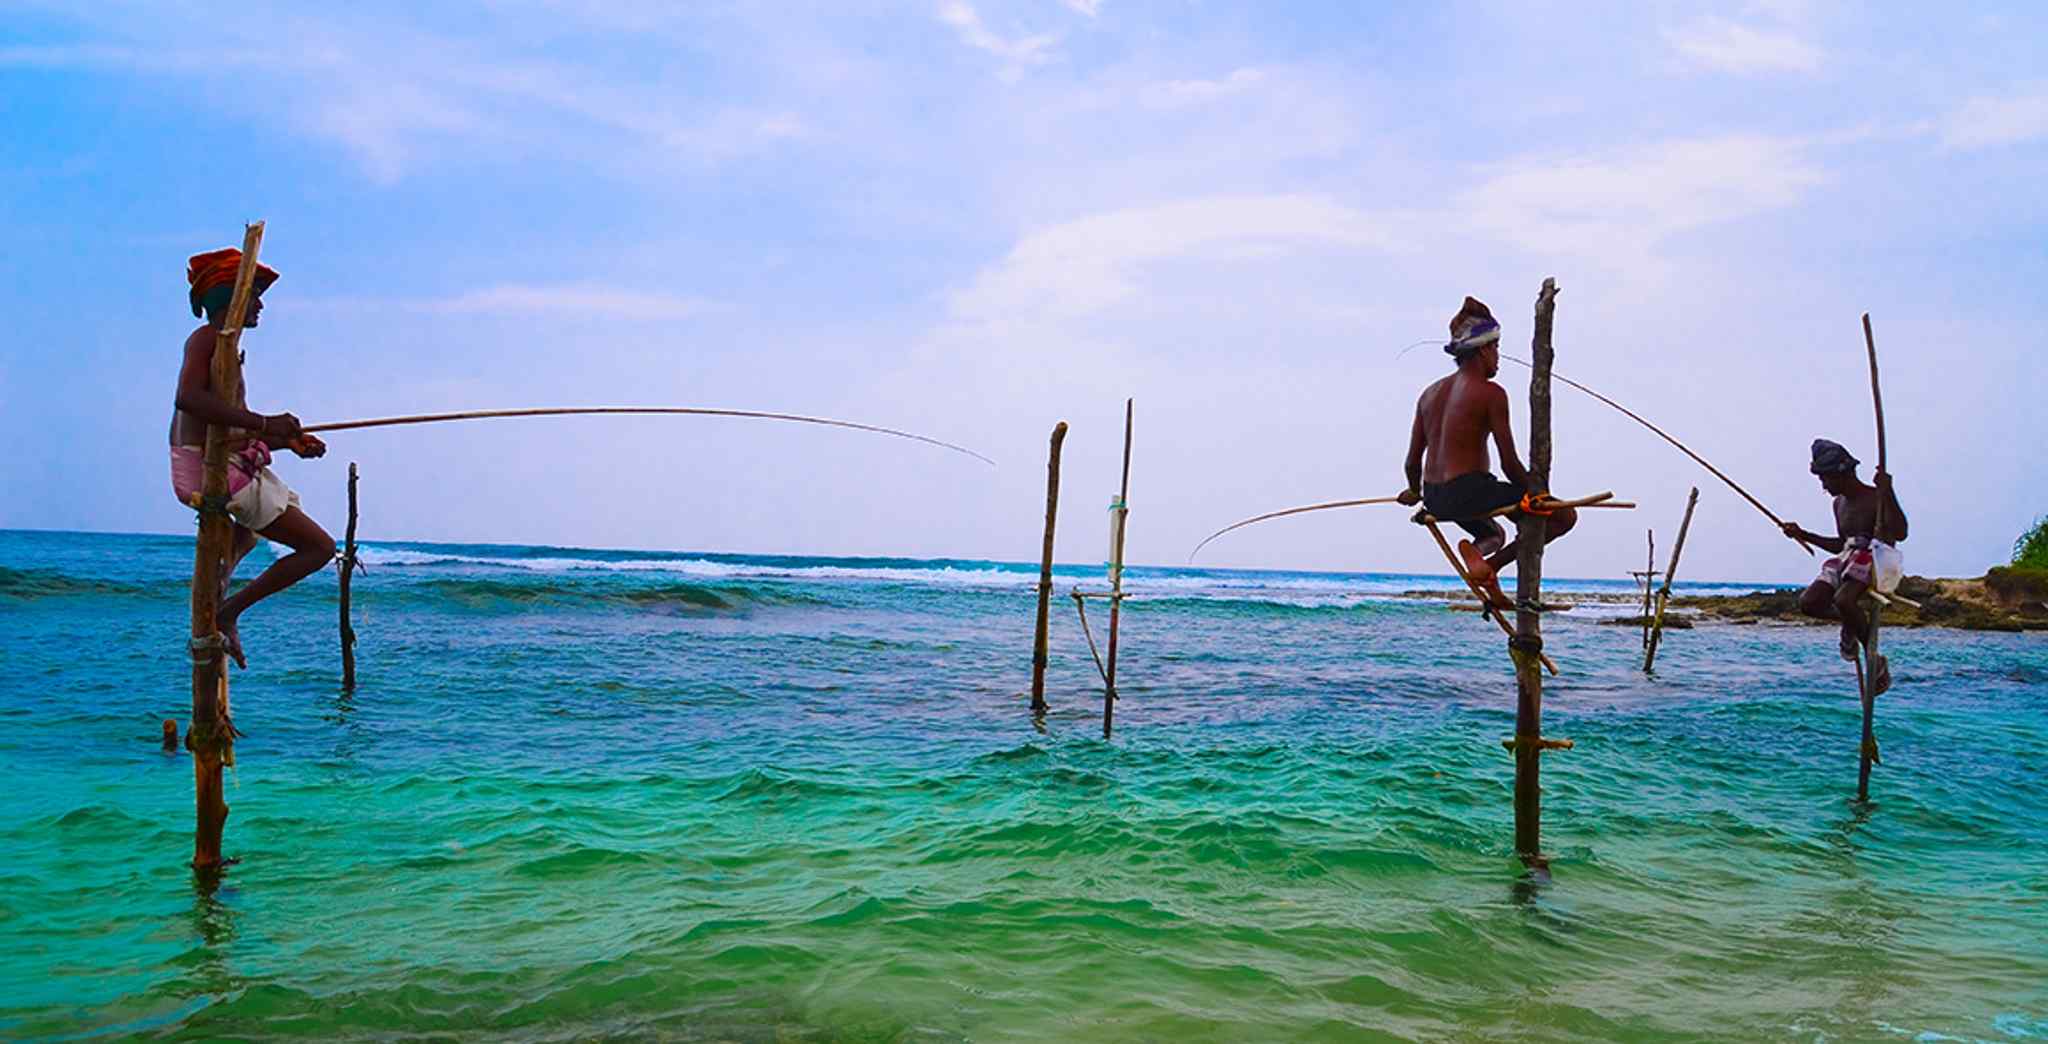 Шри ланка регистрация. Пляж Велигама Шри Ланка. Велигама Шри Ланка рыбаки. Водный мир Шри Ланки Велигама. Арамбулава Шри Ланка.